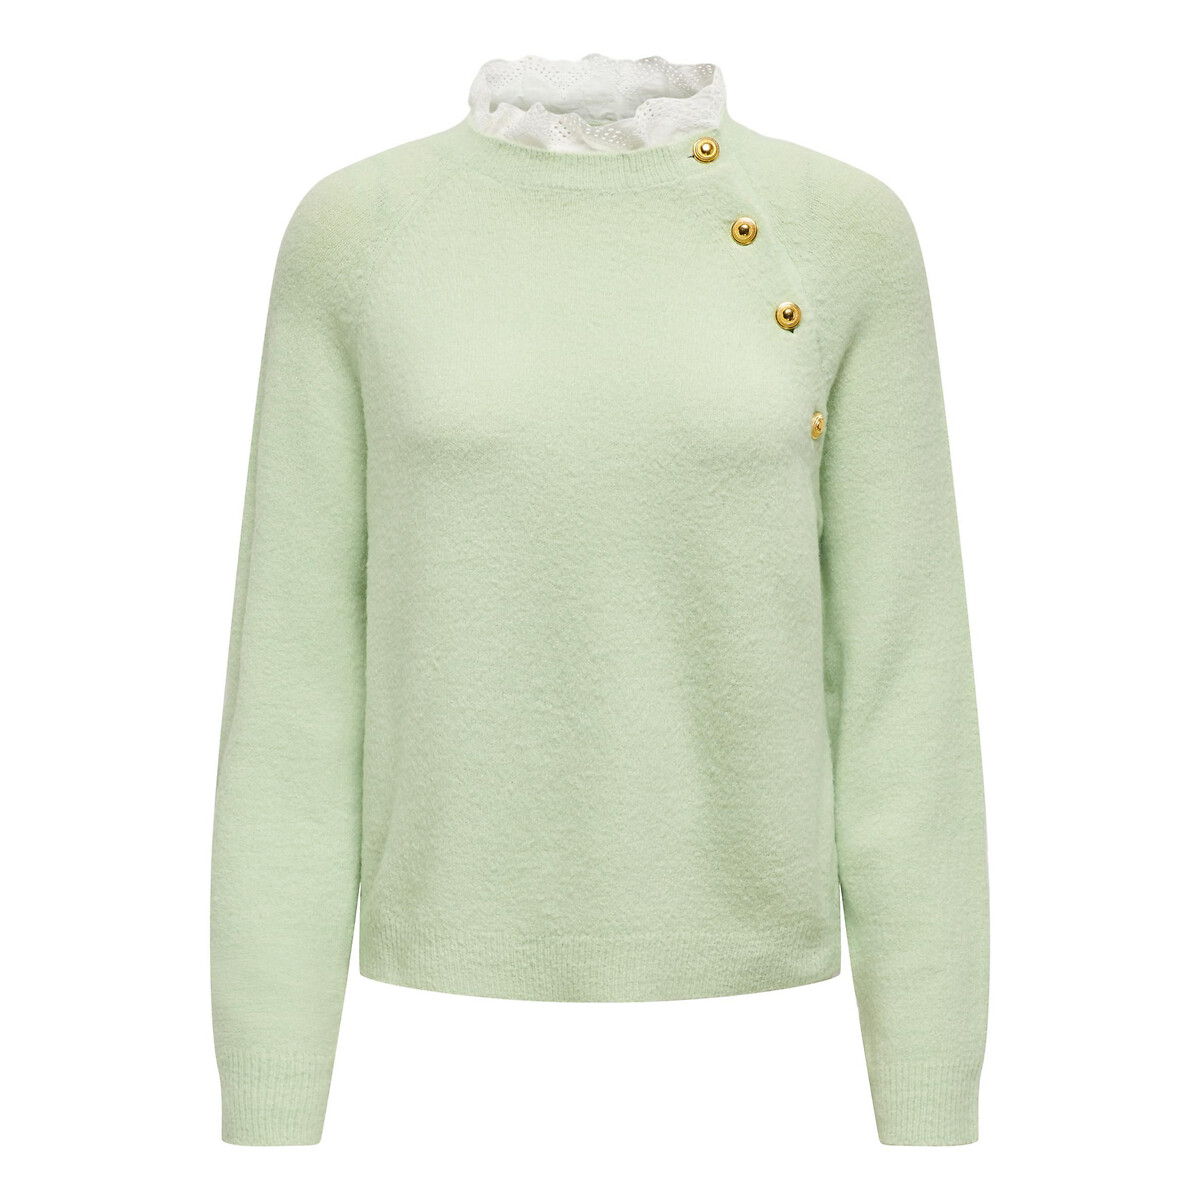 Пуловер из пышного трикотажа воротник с вышивкой  M зеленый LaRedoute, размер M